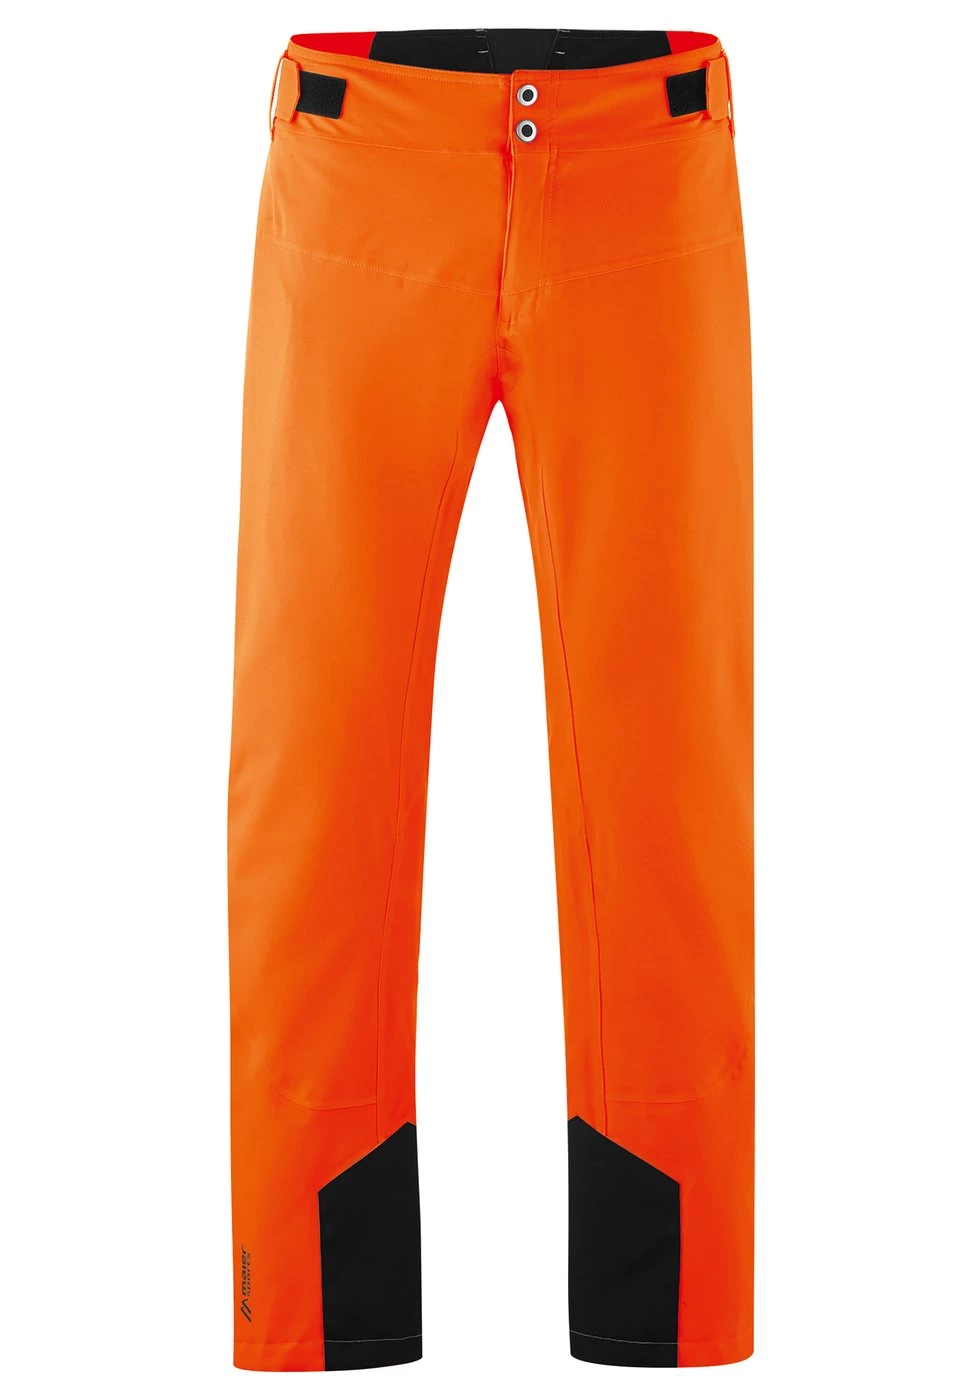 bellen waterval referentie Maier Sports Grote Maten Neo Pants skibroek heren oranje van ski broeken